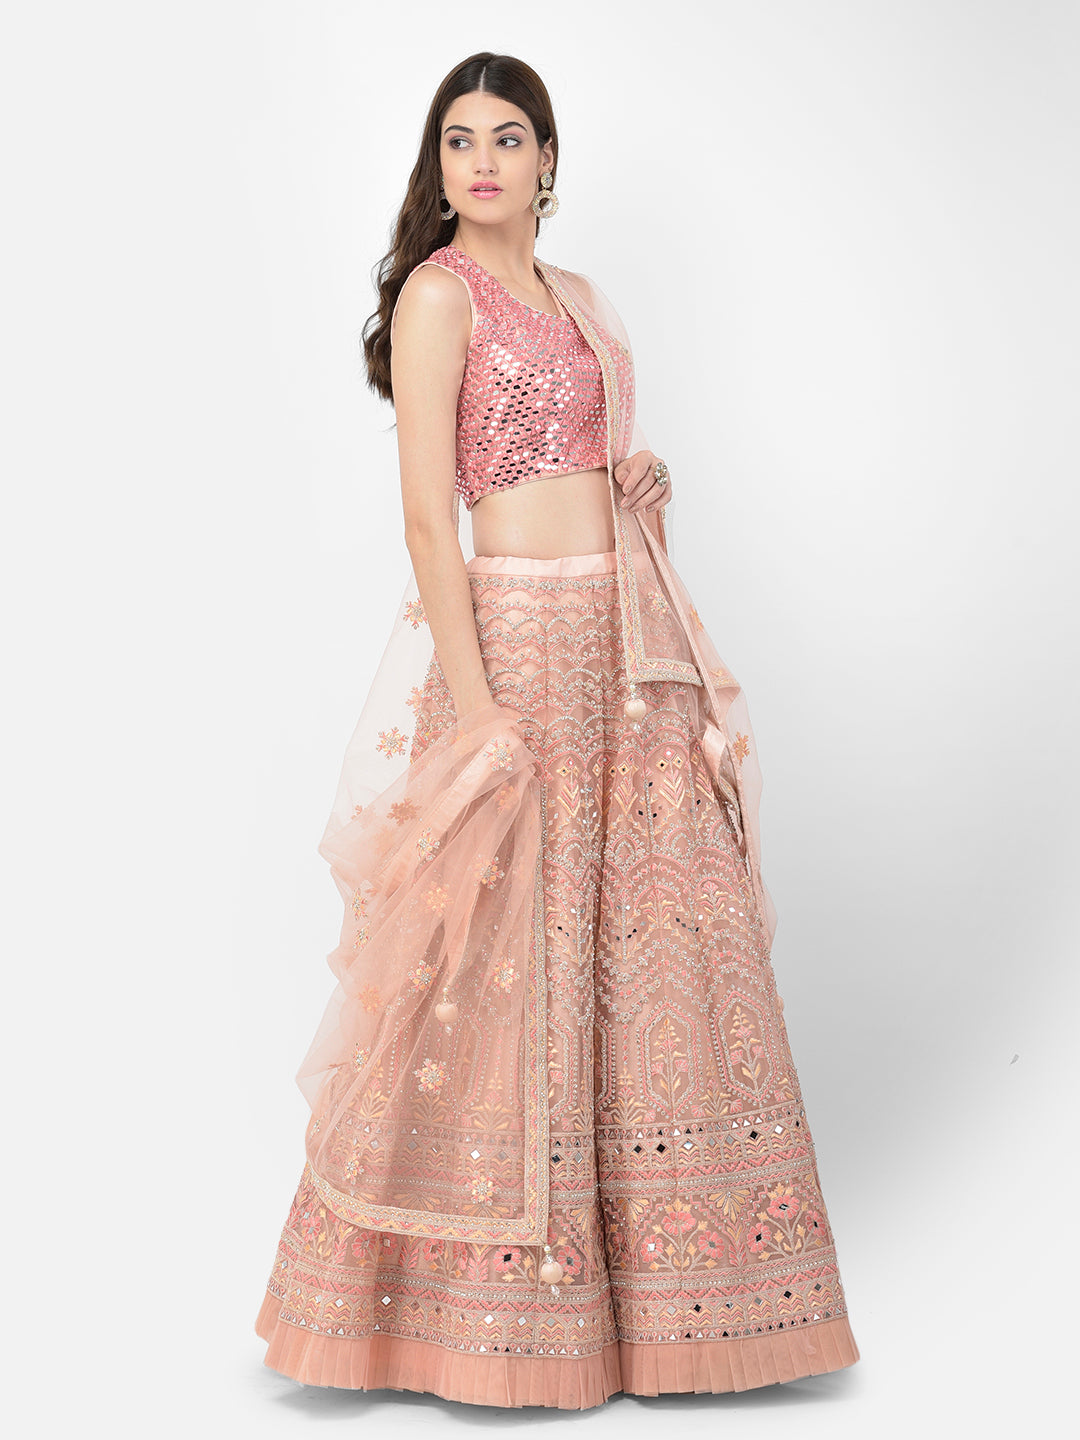 Neeru'S pink color nett fabric lehenga choli